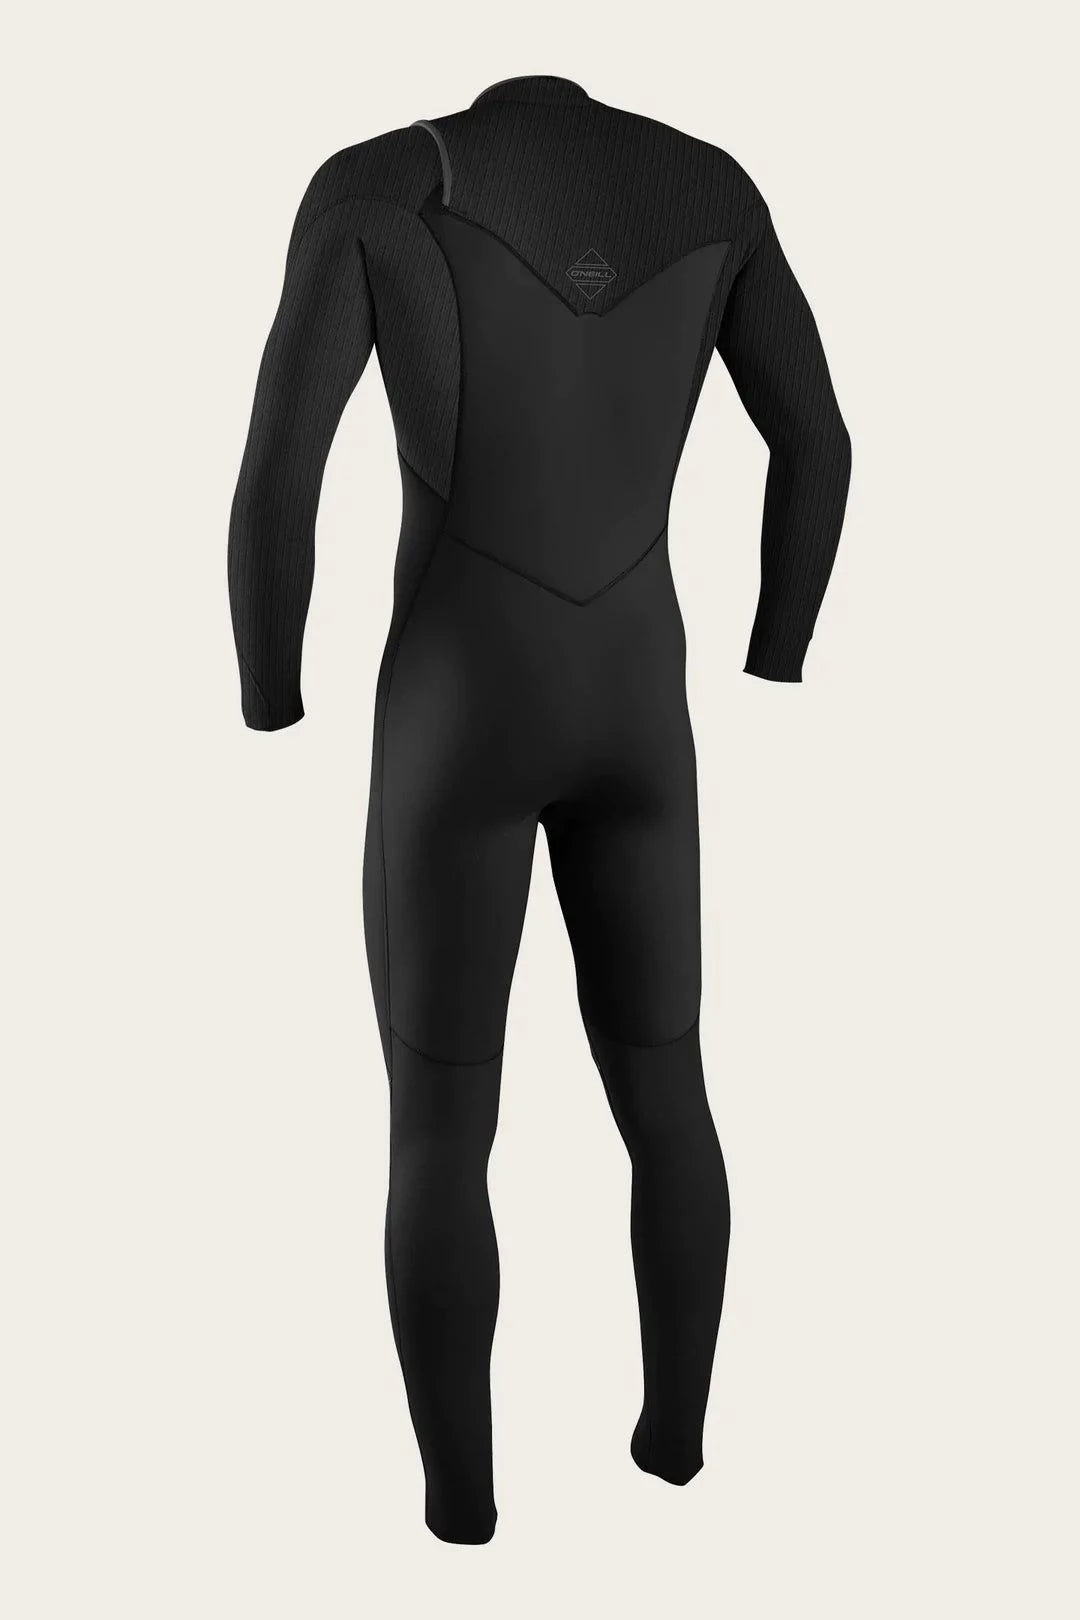 4/3+ Hyperfreak Chest Zip-O'Neill-black,chest entry,chest zip,fullsuit,hyperfreak,o'neill,wetsuit